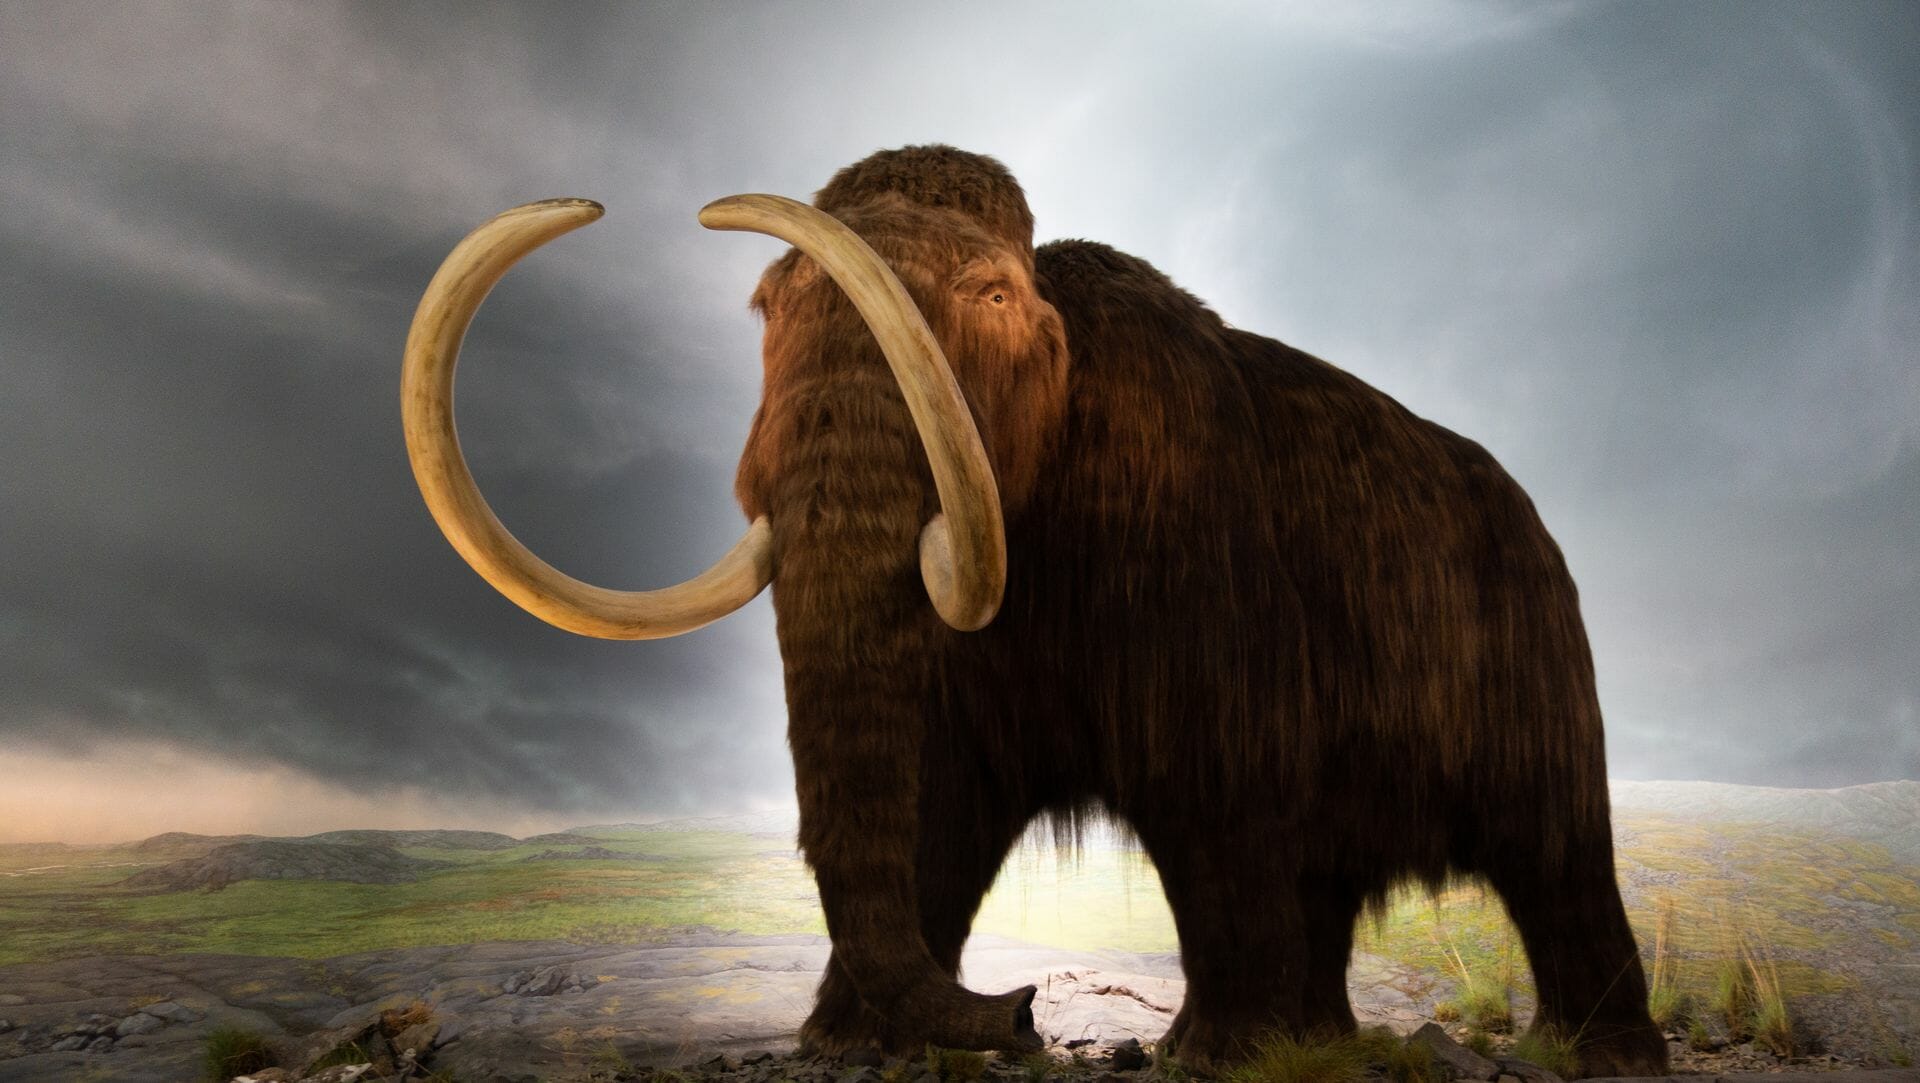 بعد انقراضه قبل 4000 عام..العلماء يعملون على إعادة فيل الماموث الصوفي إلى الحياة watanserb.com